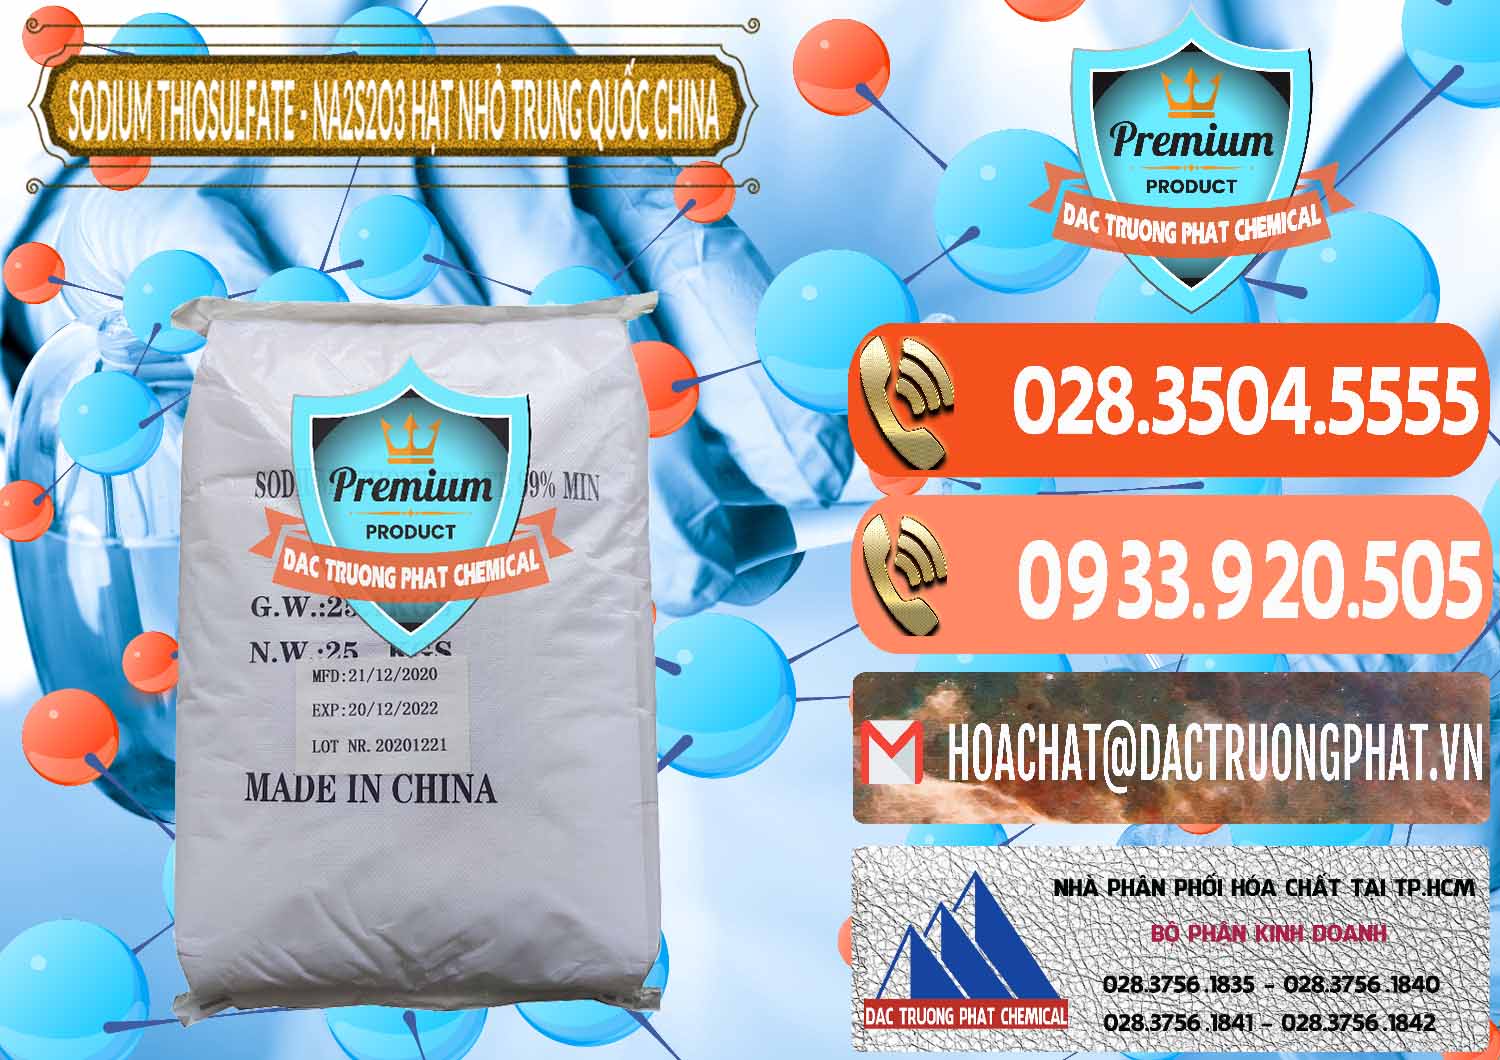 Cty chuyên nhập khẩu & bán Sodium Thiosulfate - NA2S2O3 Hạt Nhỏ Trung Quốc China - 0204 - Nơi bán và cung cấp hóa chất tại TP.HCM - hoachatmientay.com